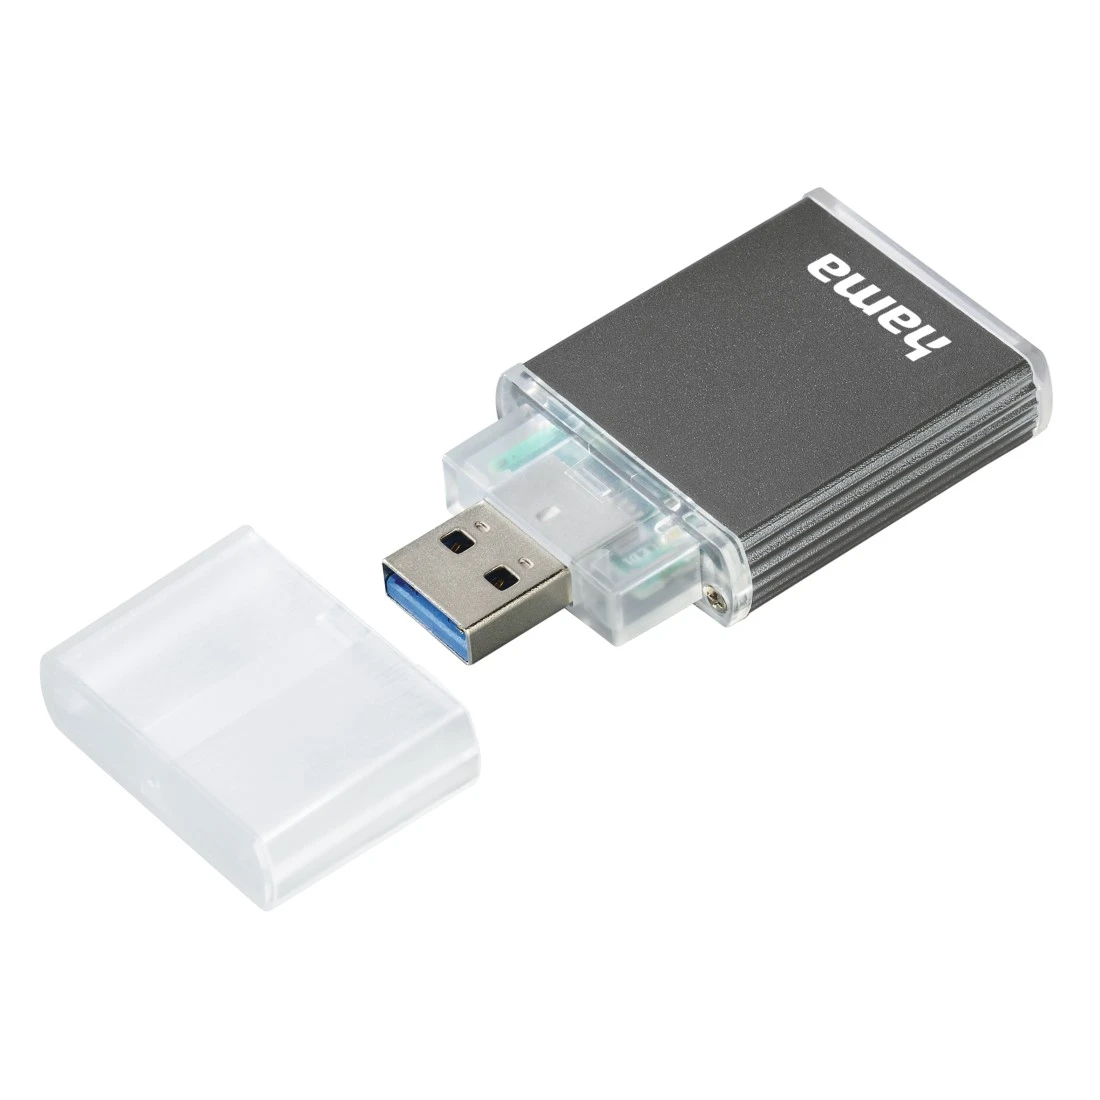 Lecteur de Cartes Sdhc et Sdxc - USB 3.0 - UHS-I et UHS-II